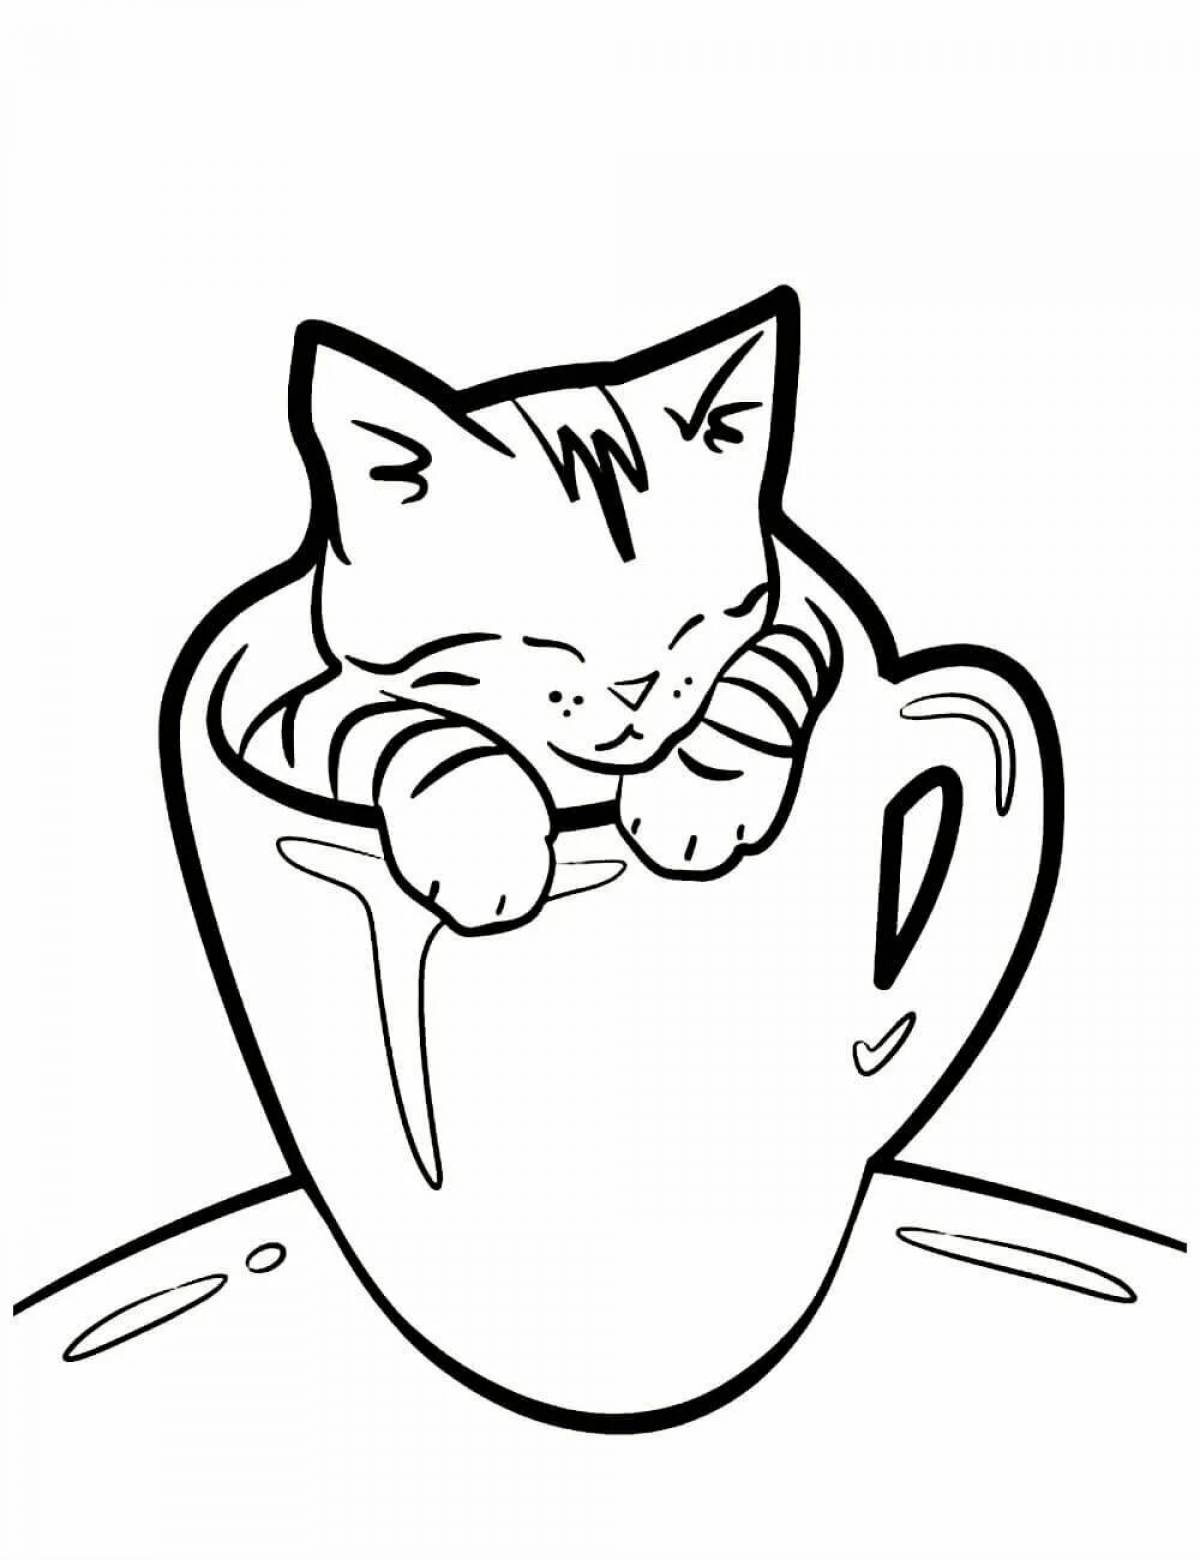 Coloring book dreamy cat in a mug